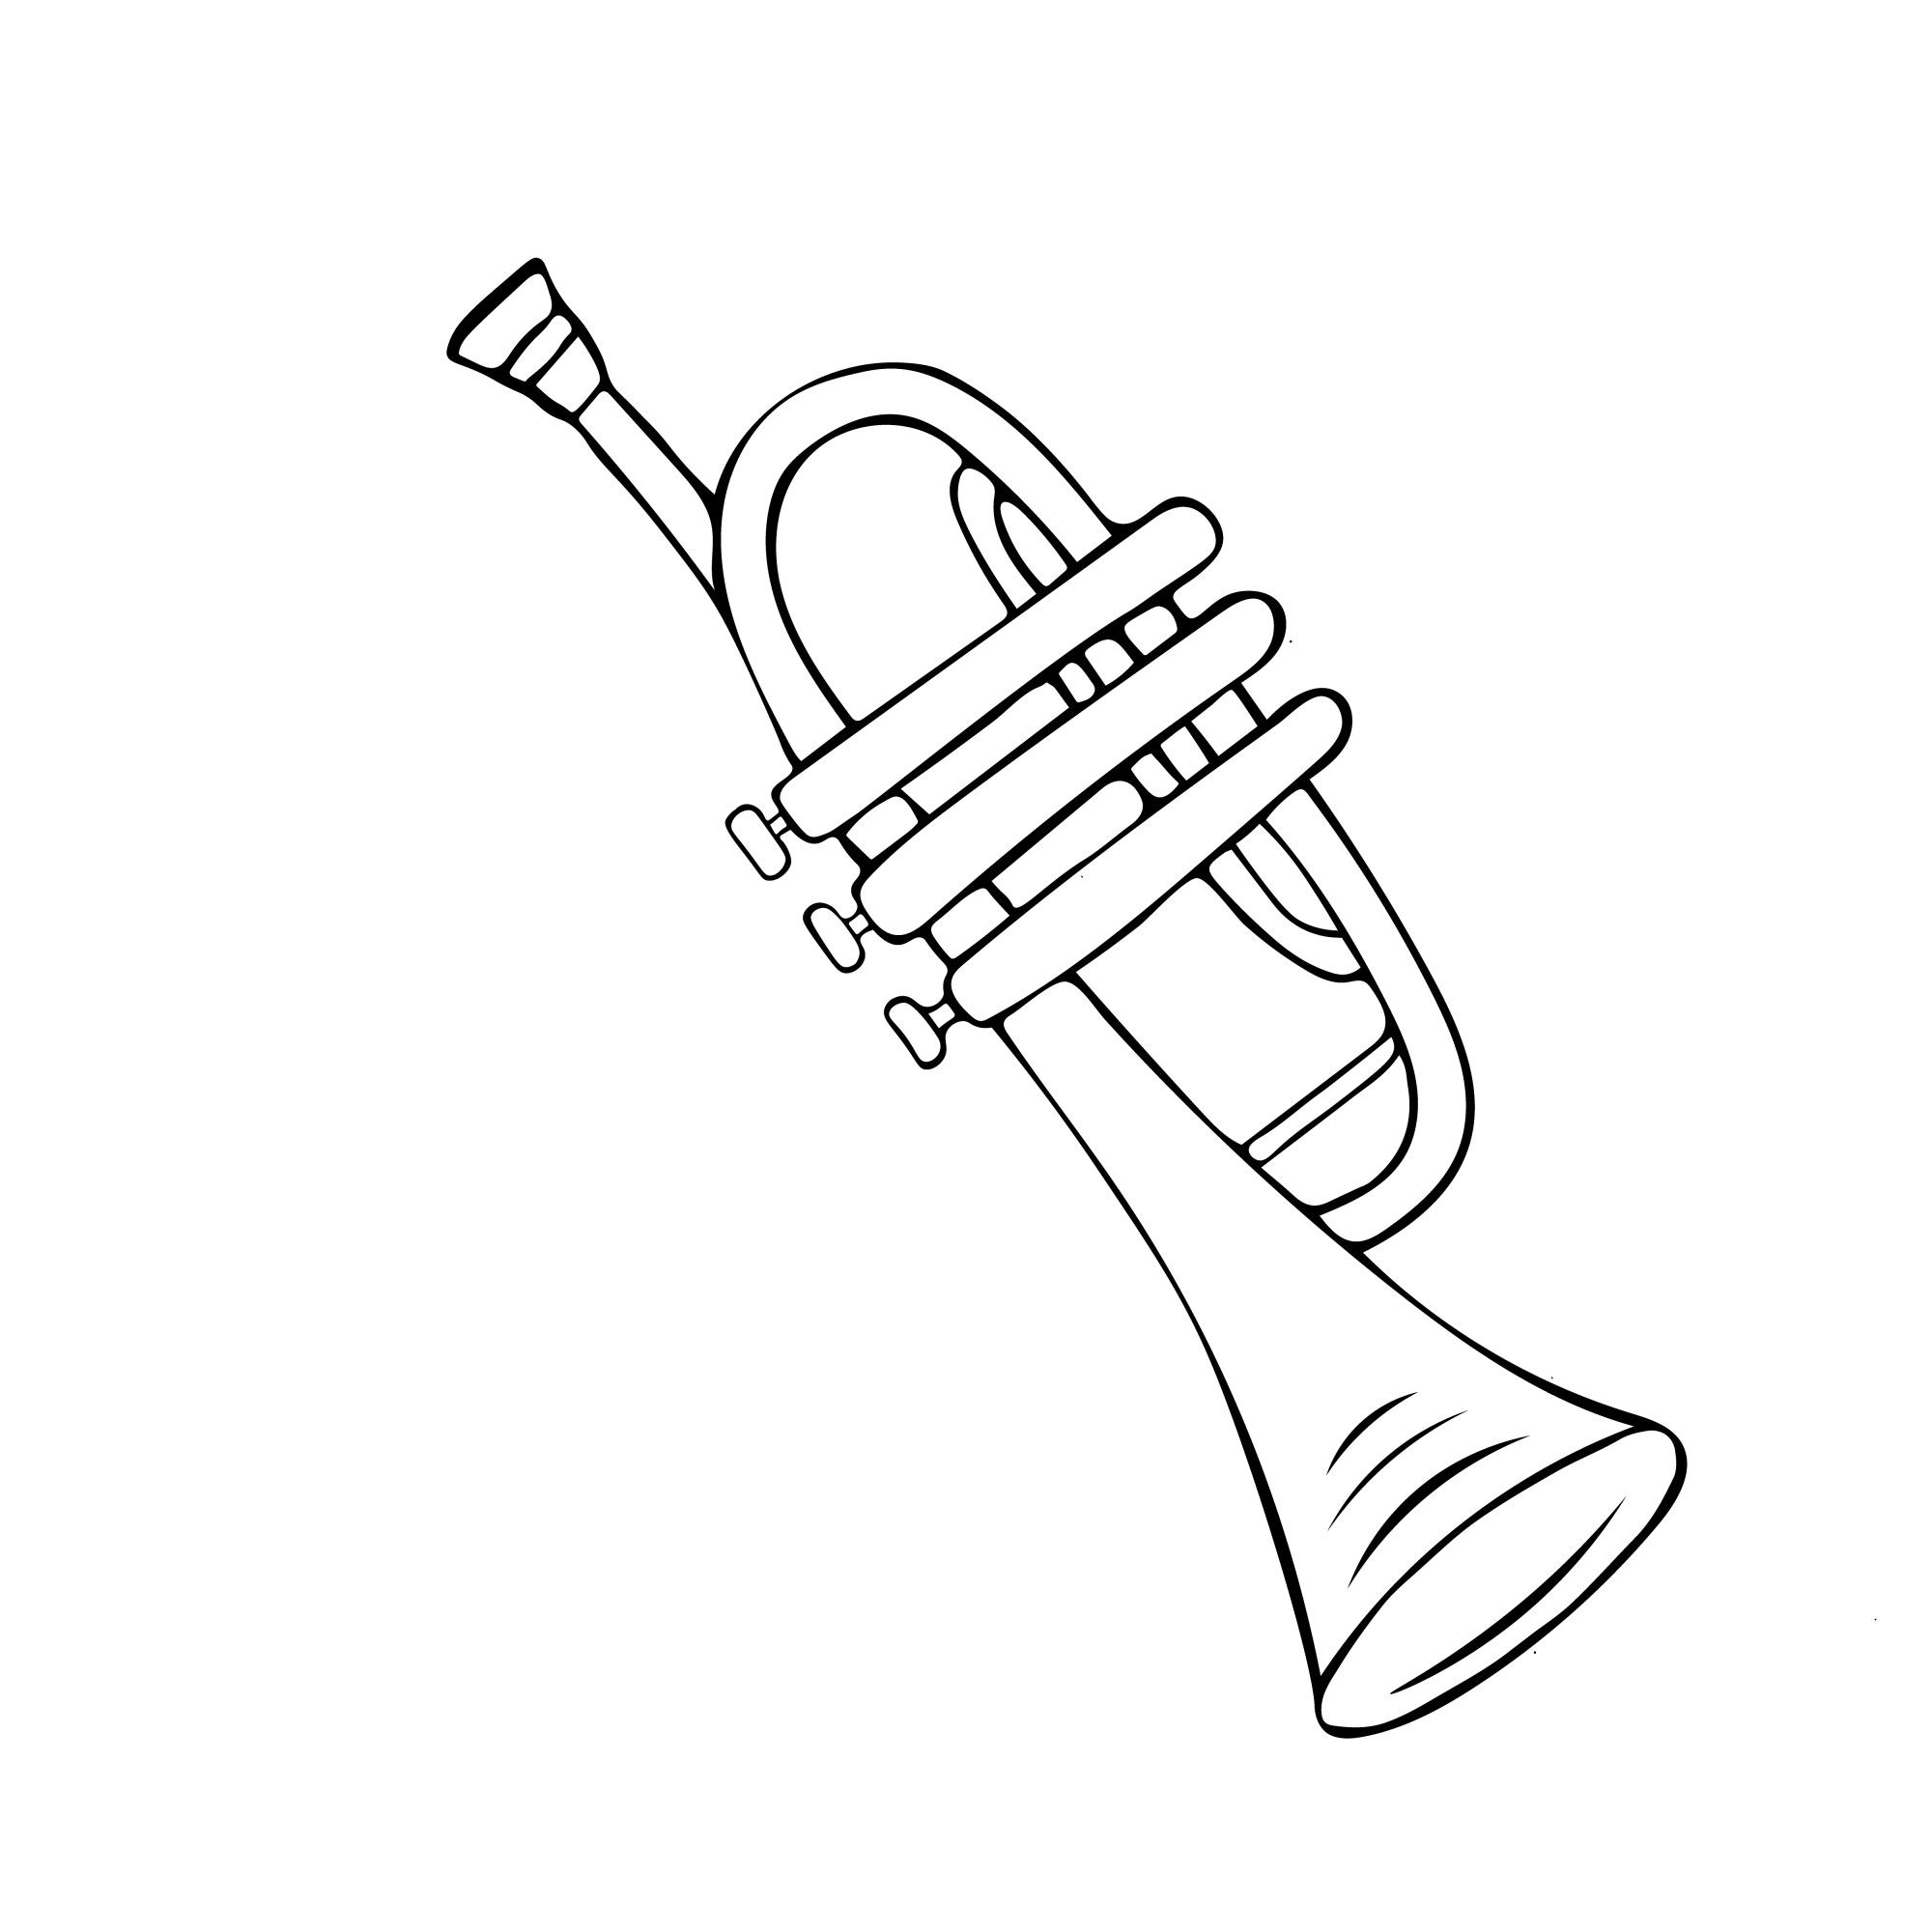 Раскраска для детей: игрушка музыкальная труба